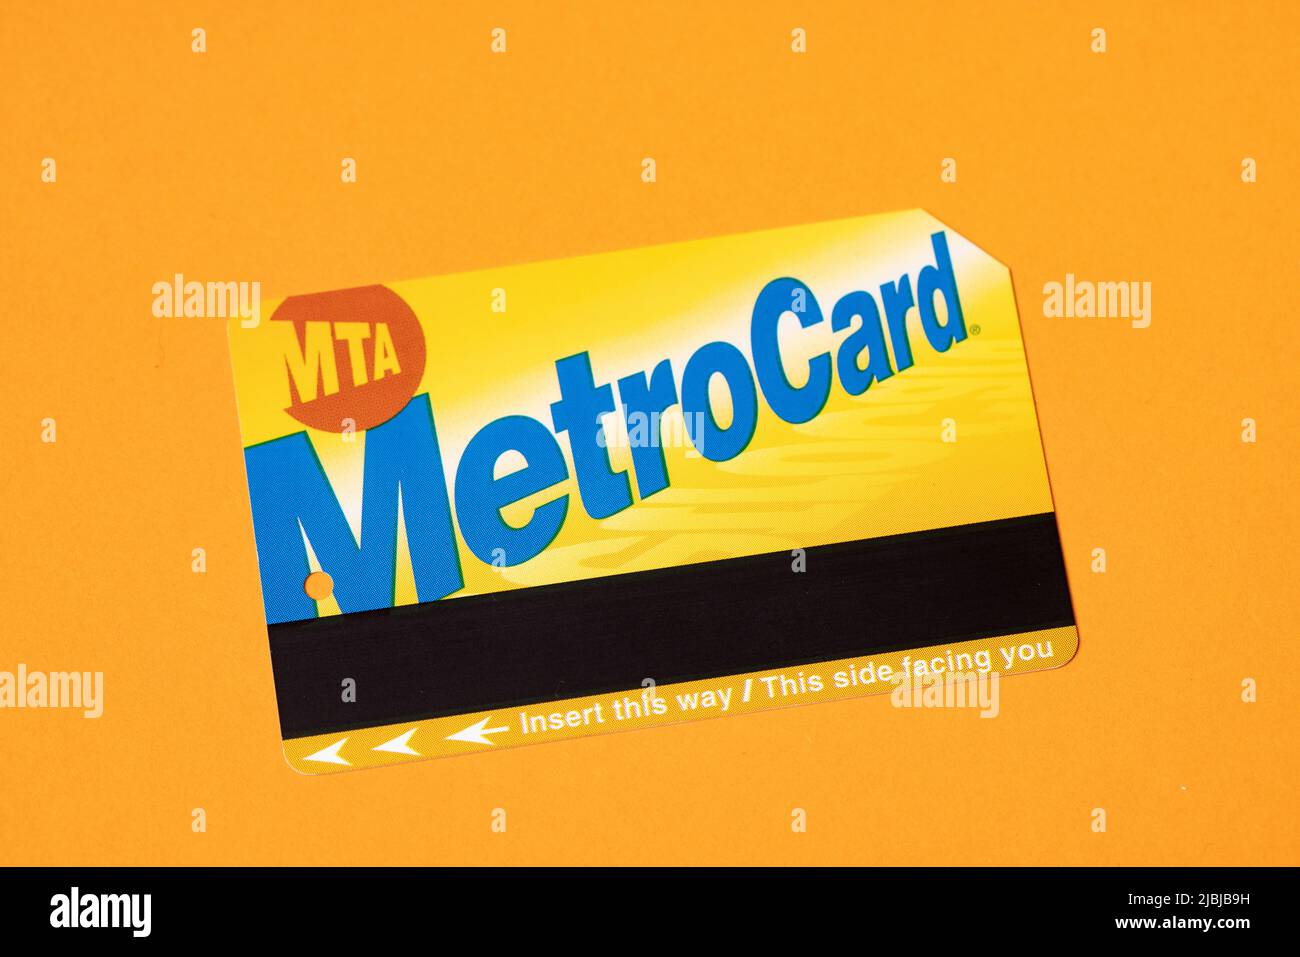 Manhattan, New York/USA - Aprile 8. 2021: New York City Metrocard su sfondo arancione. Biglietto per i mezzi pubblici a New York Foto Stock